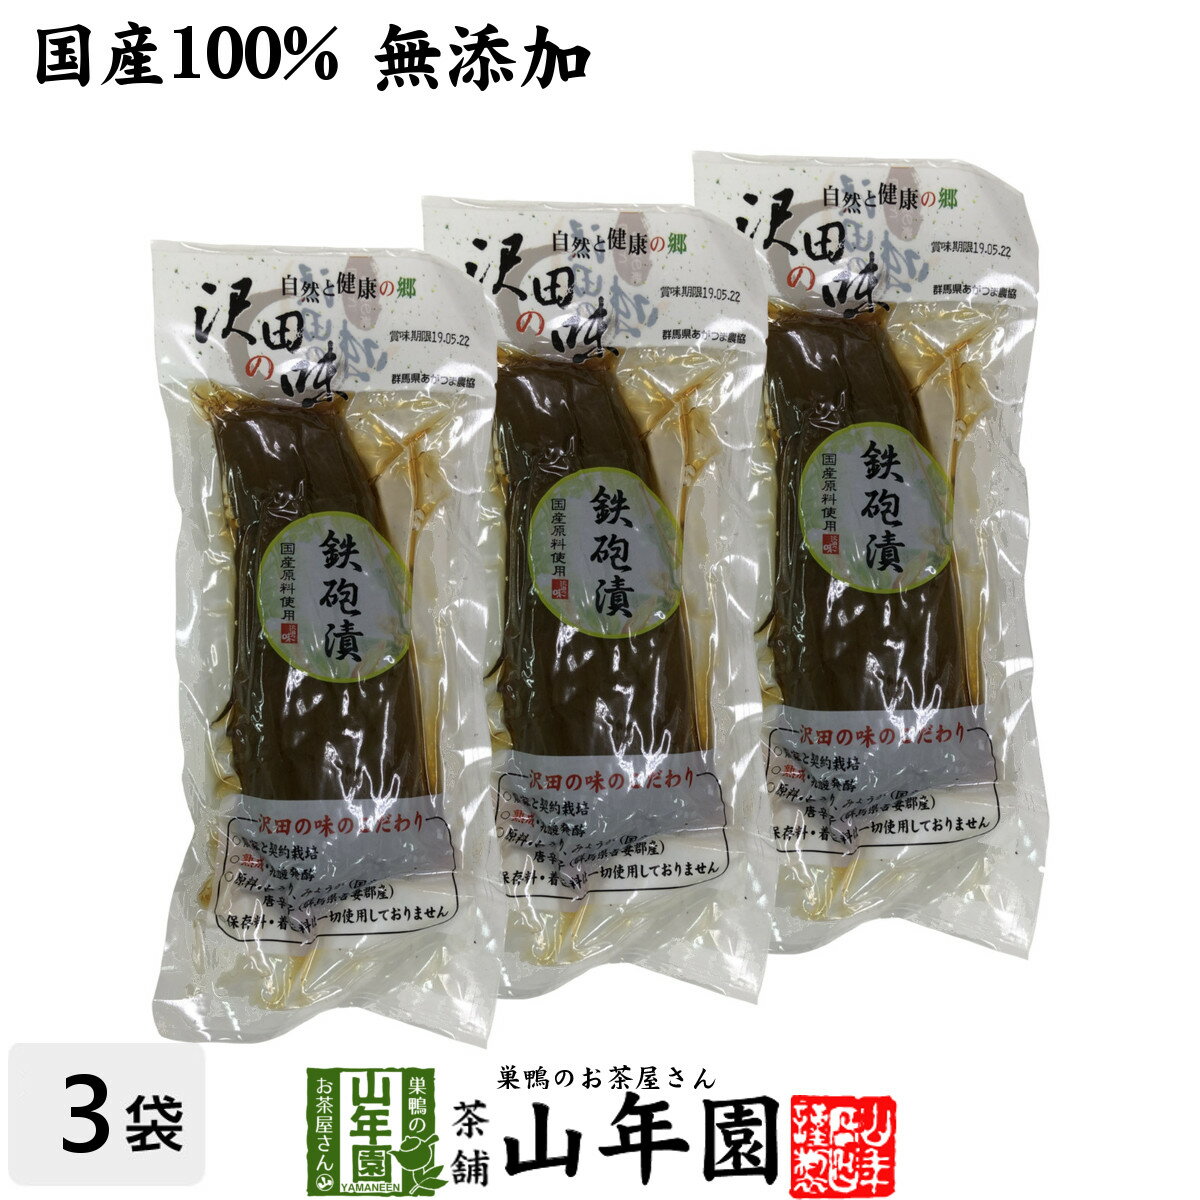 【国産原料使用】沢田の味 鉄砲漬 1本×3袋セット送料無料 